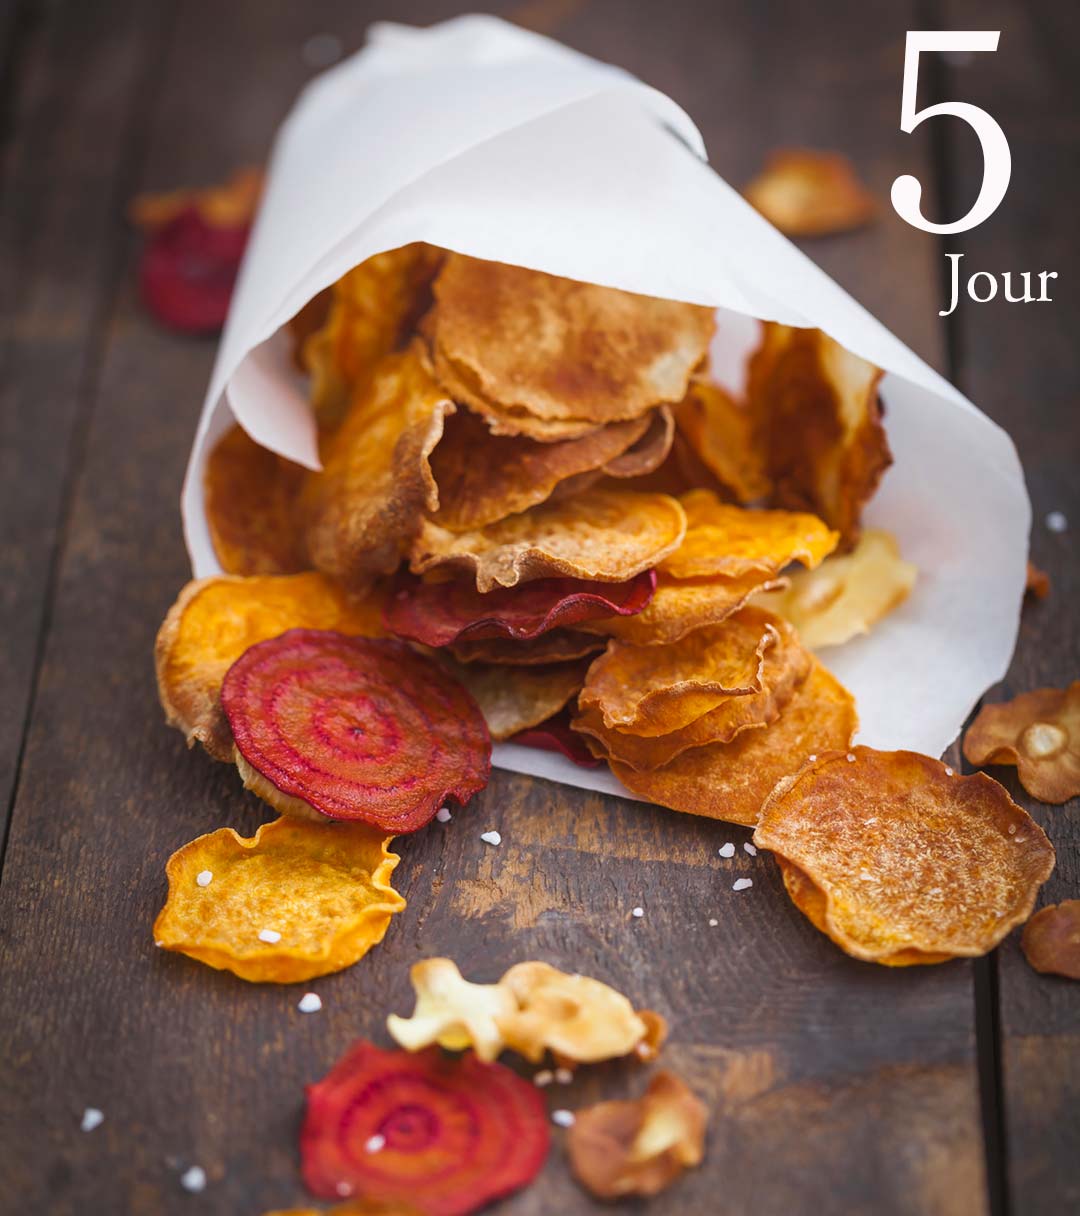 7 cuisinebEditor's Choice 5 Jour ܂